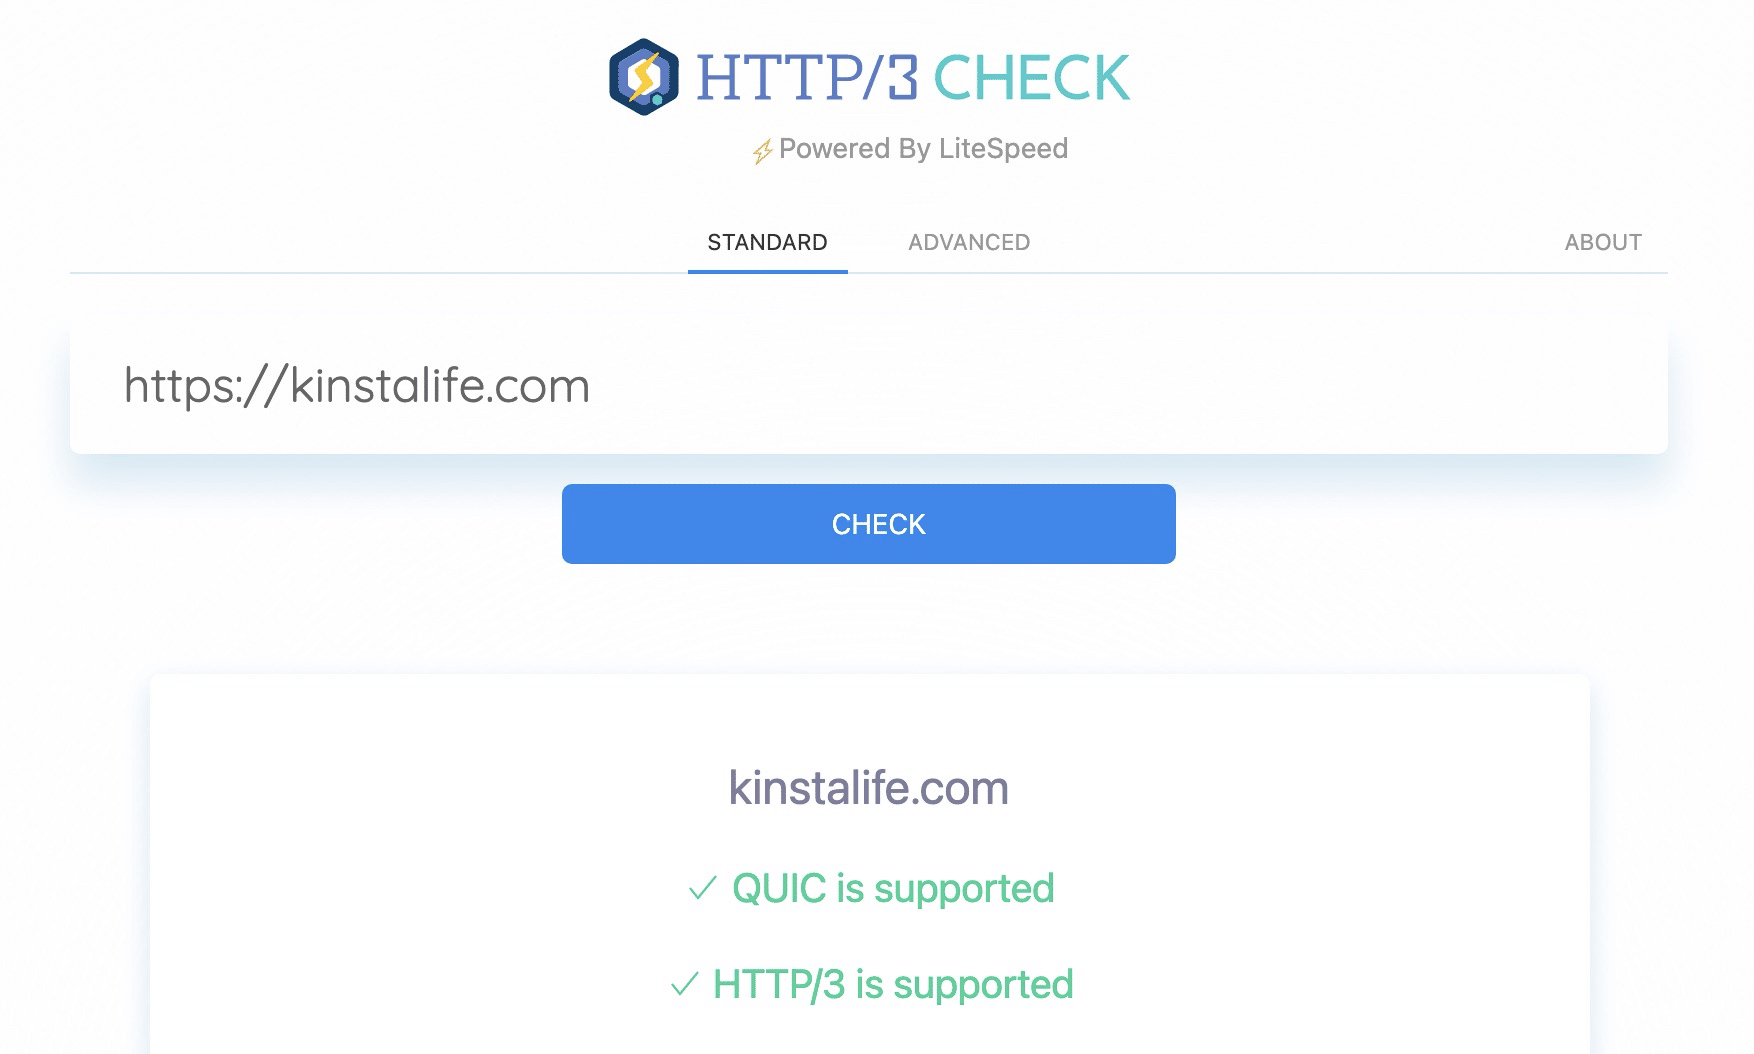 Webbplatser som finns på Kinsta stöder HTTP/3 för snabbare SSL-handskakningar